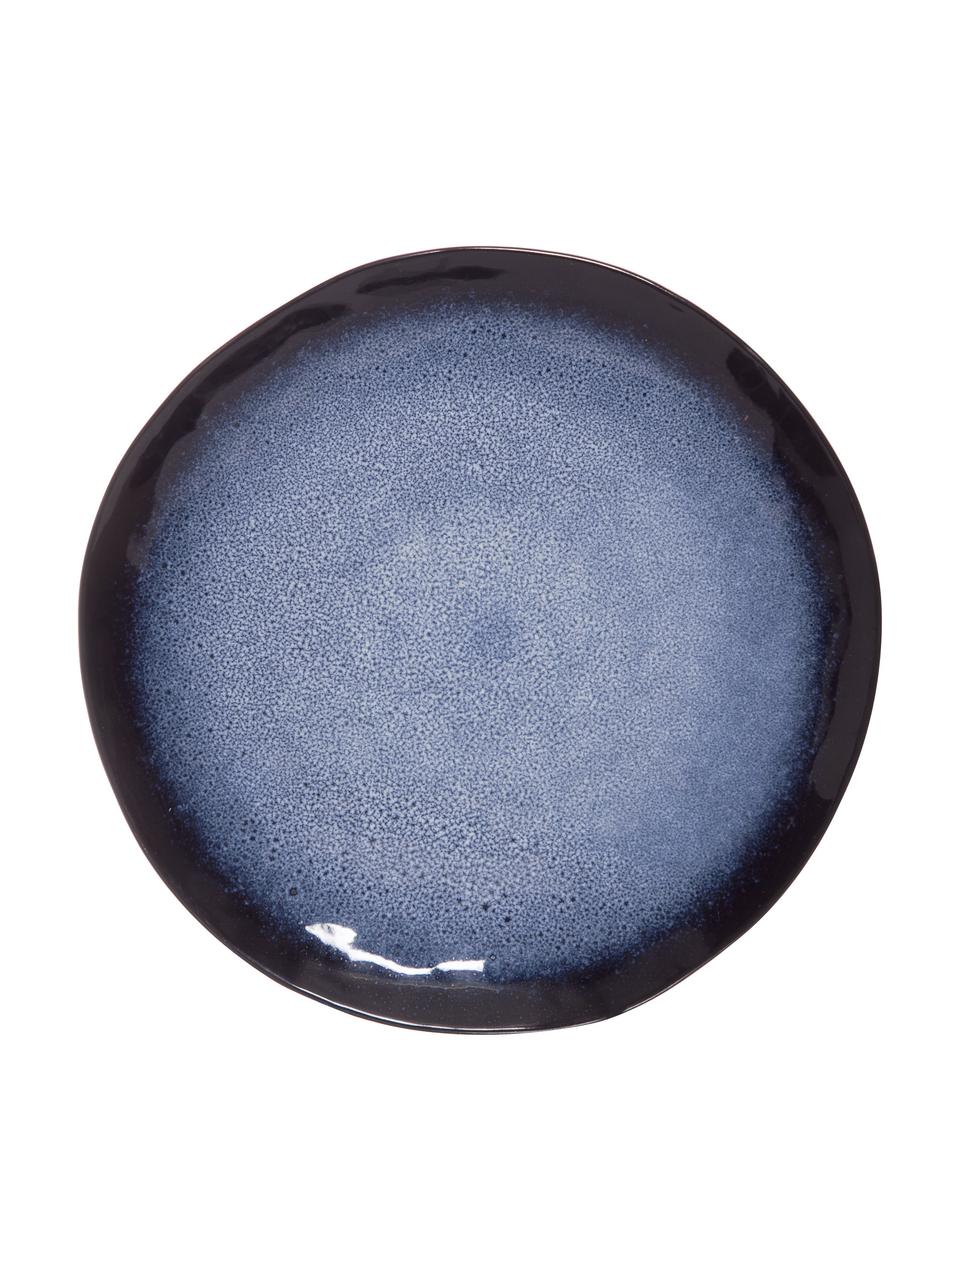 Piatto piano blu con smalto efficace Sapphire 3 pz, Gres, Blu, nero-marrone, Ø 27 cm